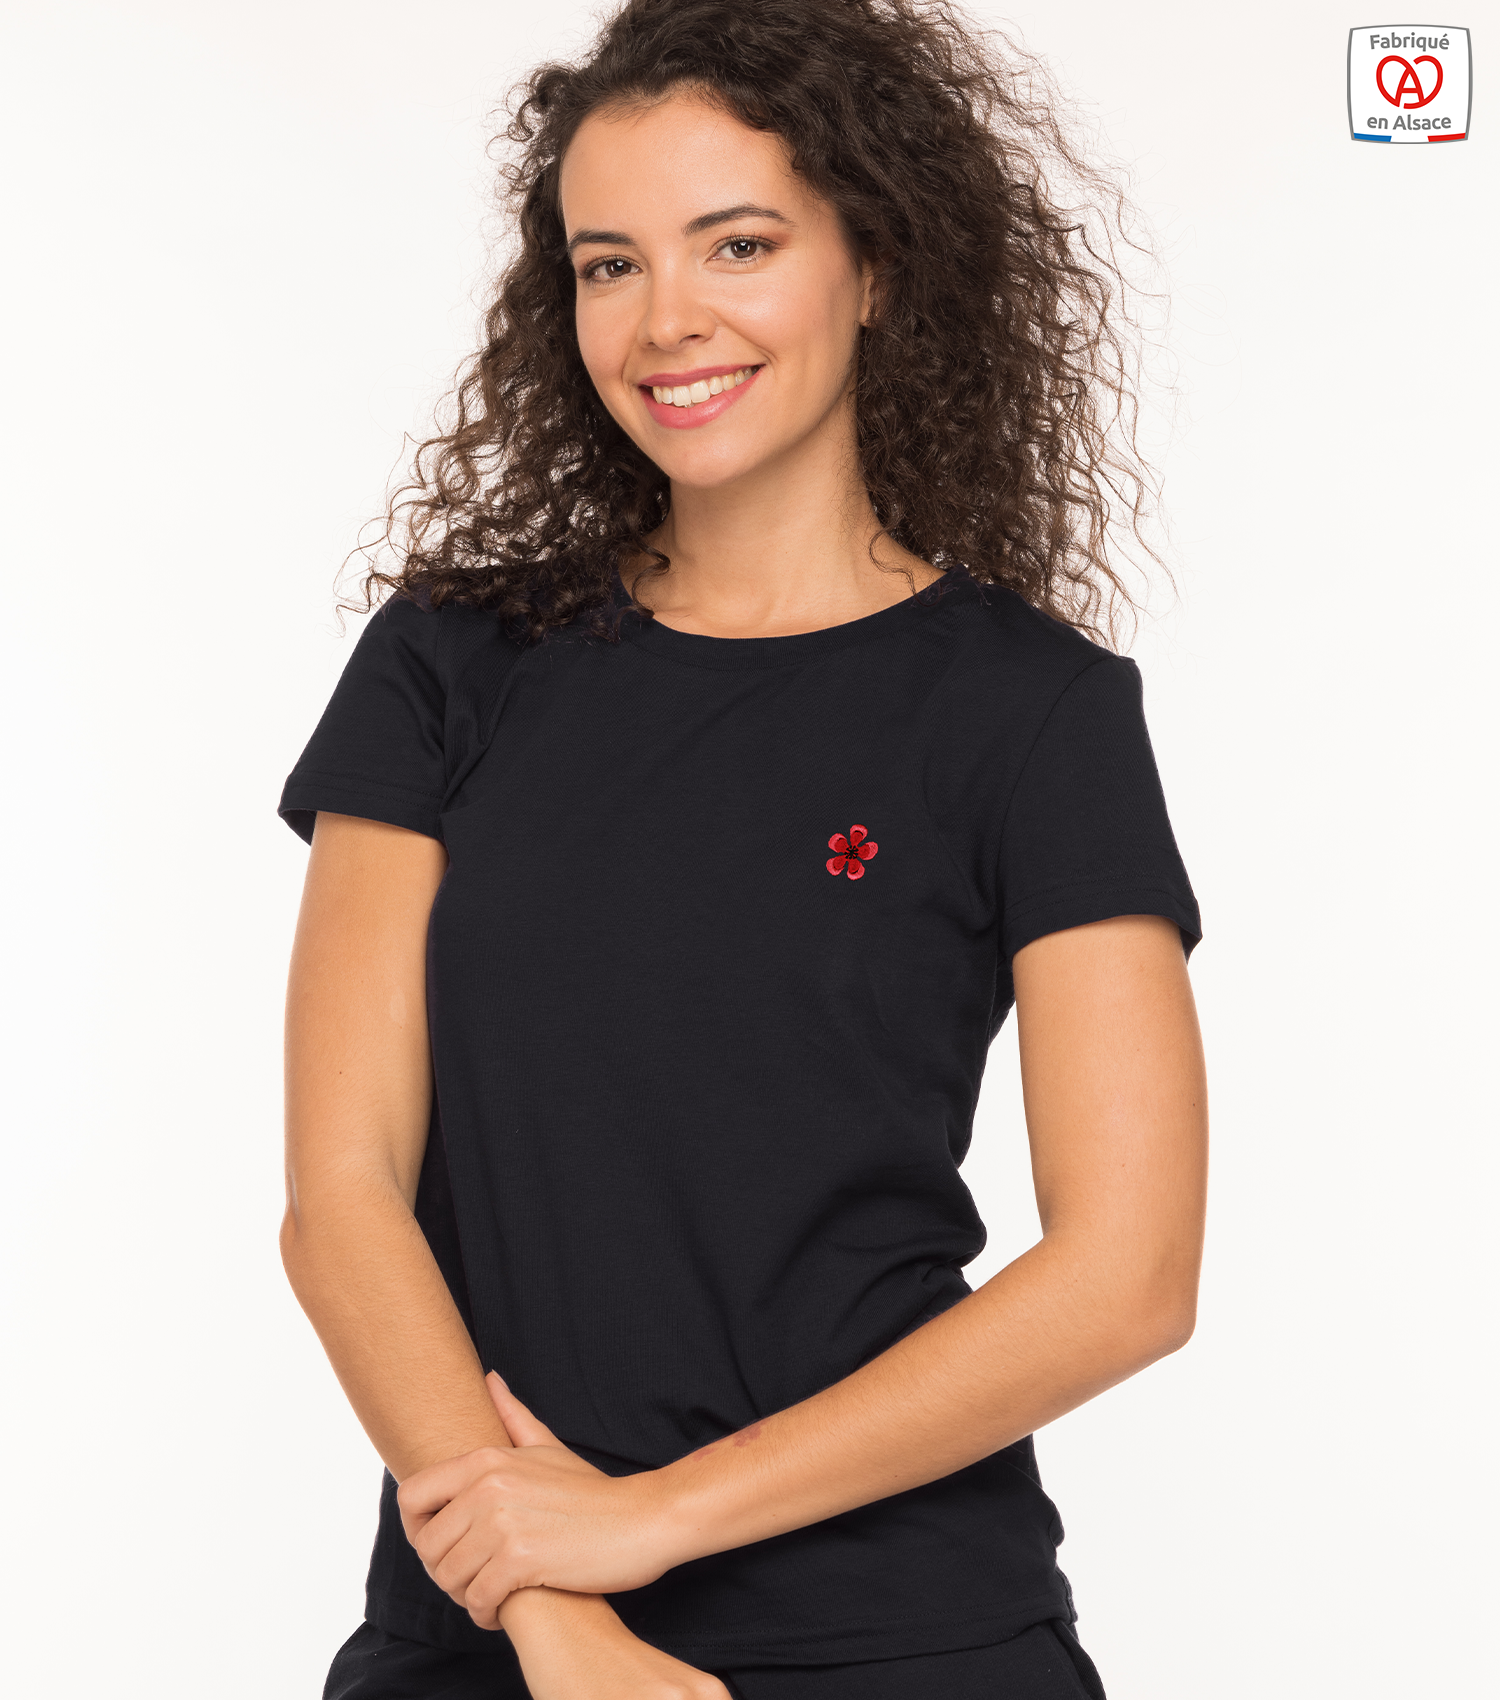 theim-t-shirt-femme-noir-fleur-geranium-made-in-alsace-1500x1700px